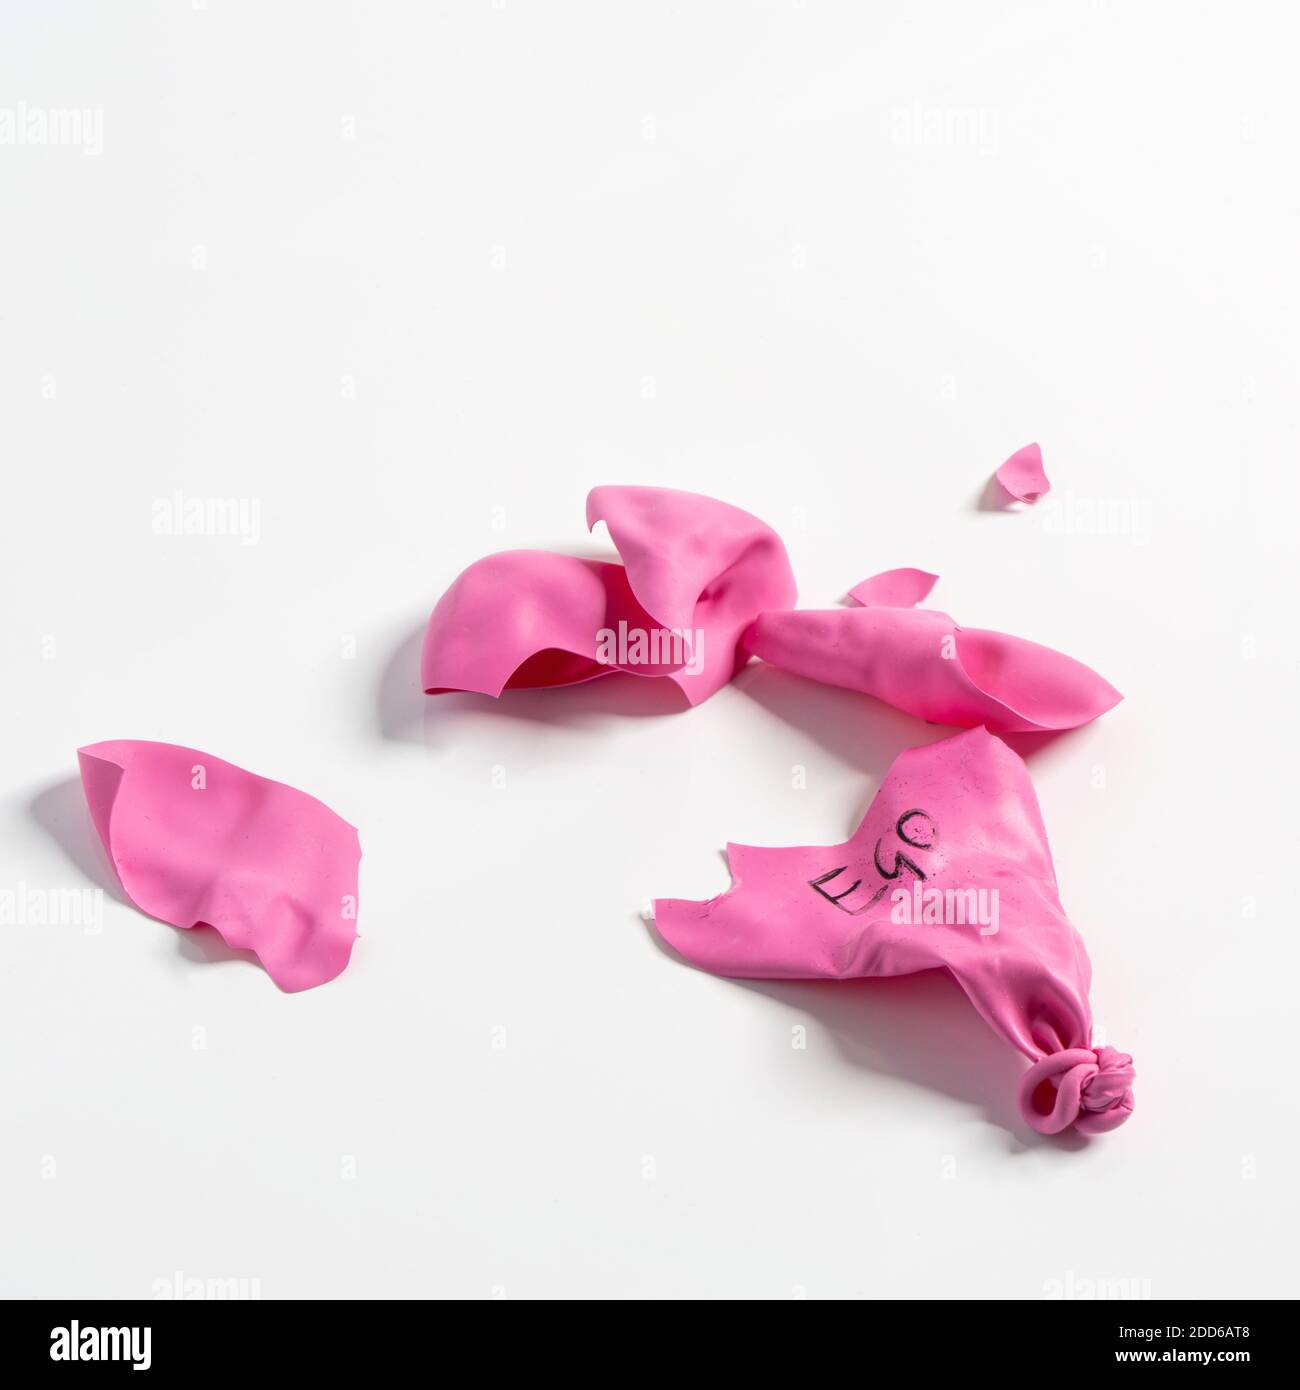 Die Darstellung des zerstörten Egos mit einem rosa Ballon Explodiert Stockfoto